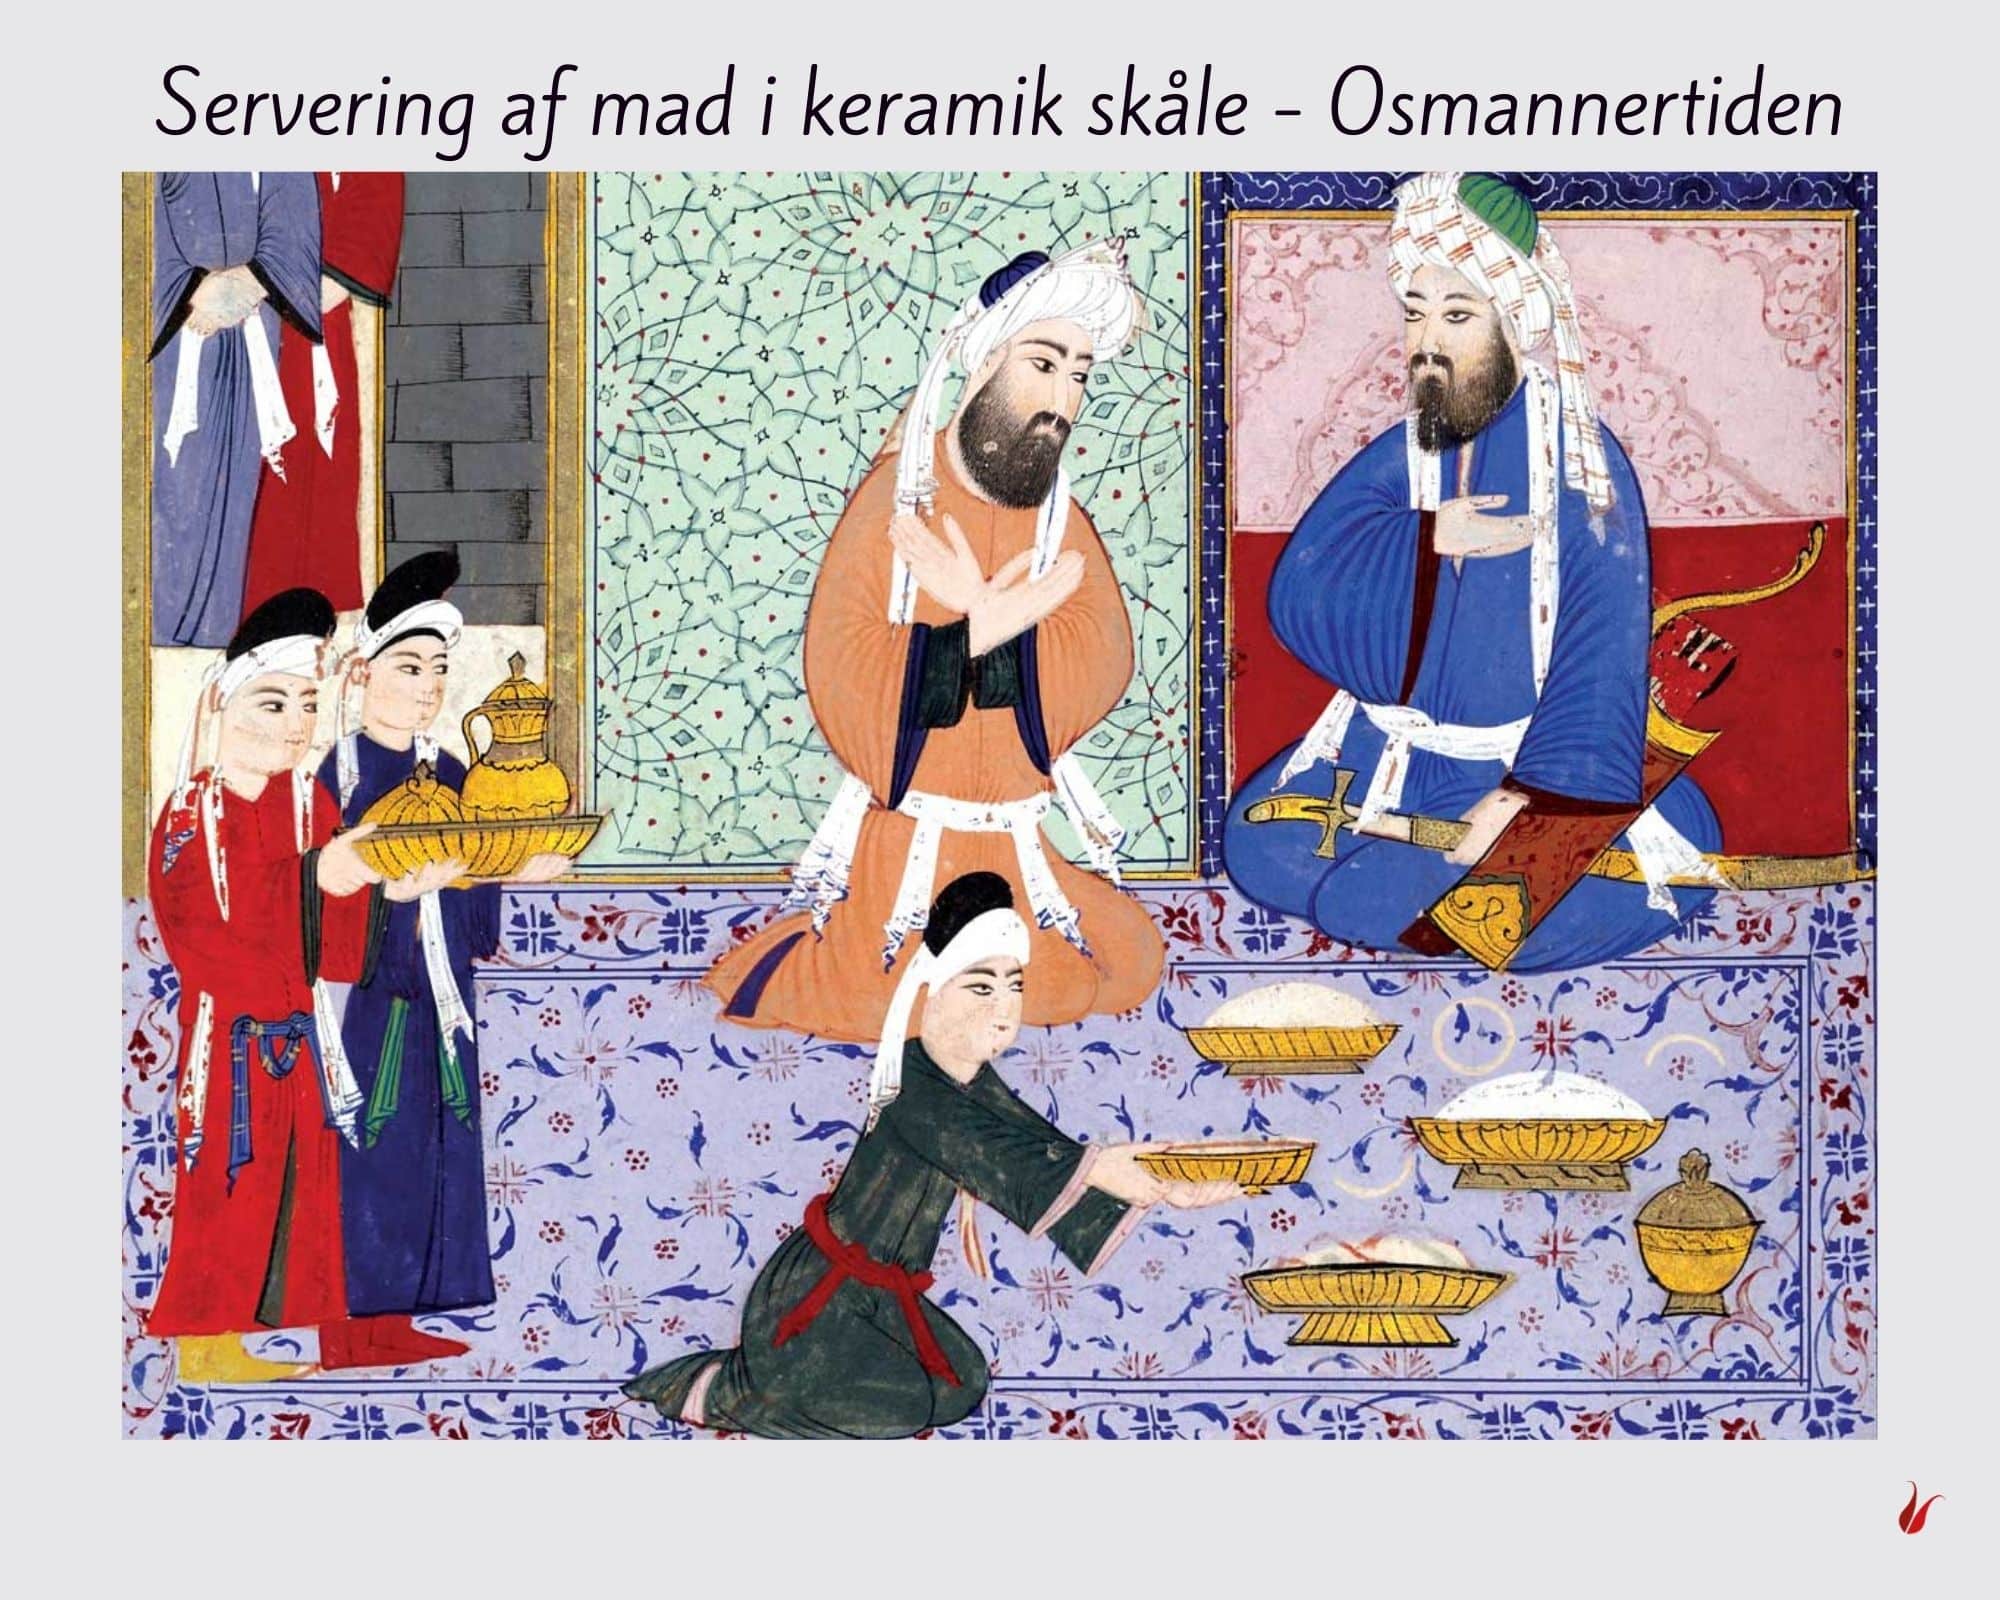 Maleri fra Osmannertiden med servering af mad i skåle